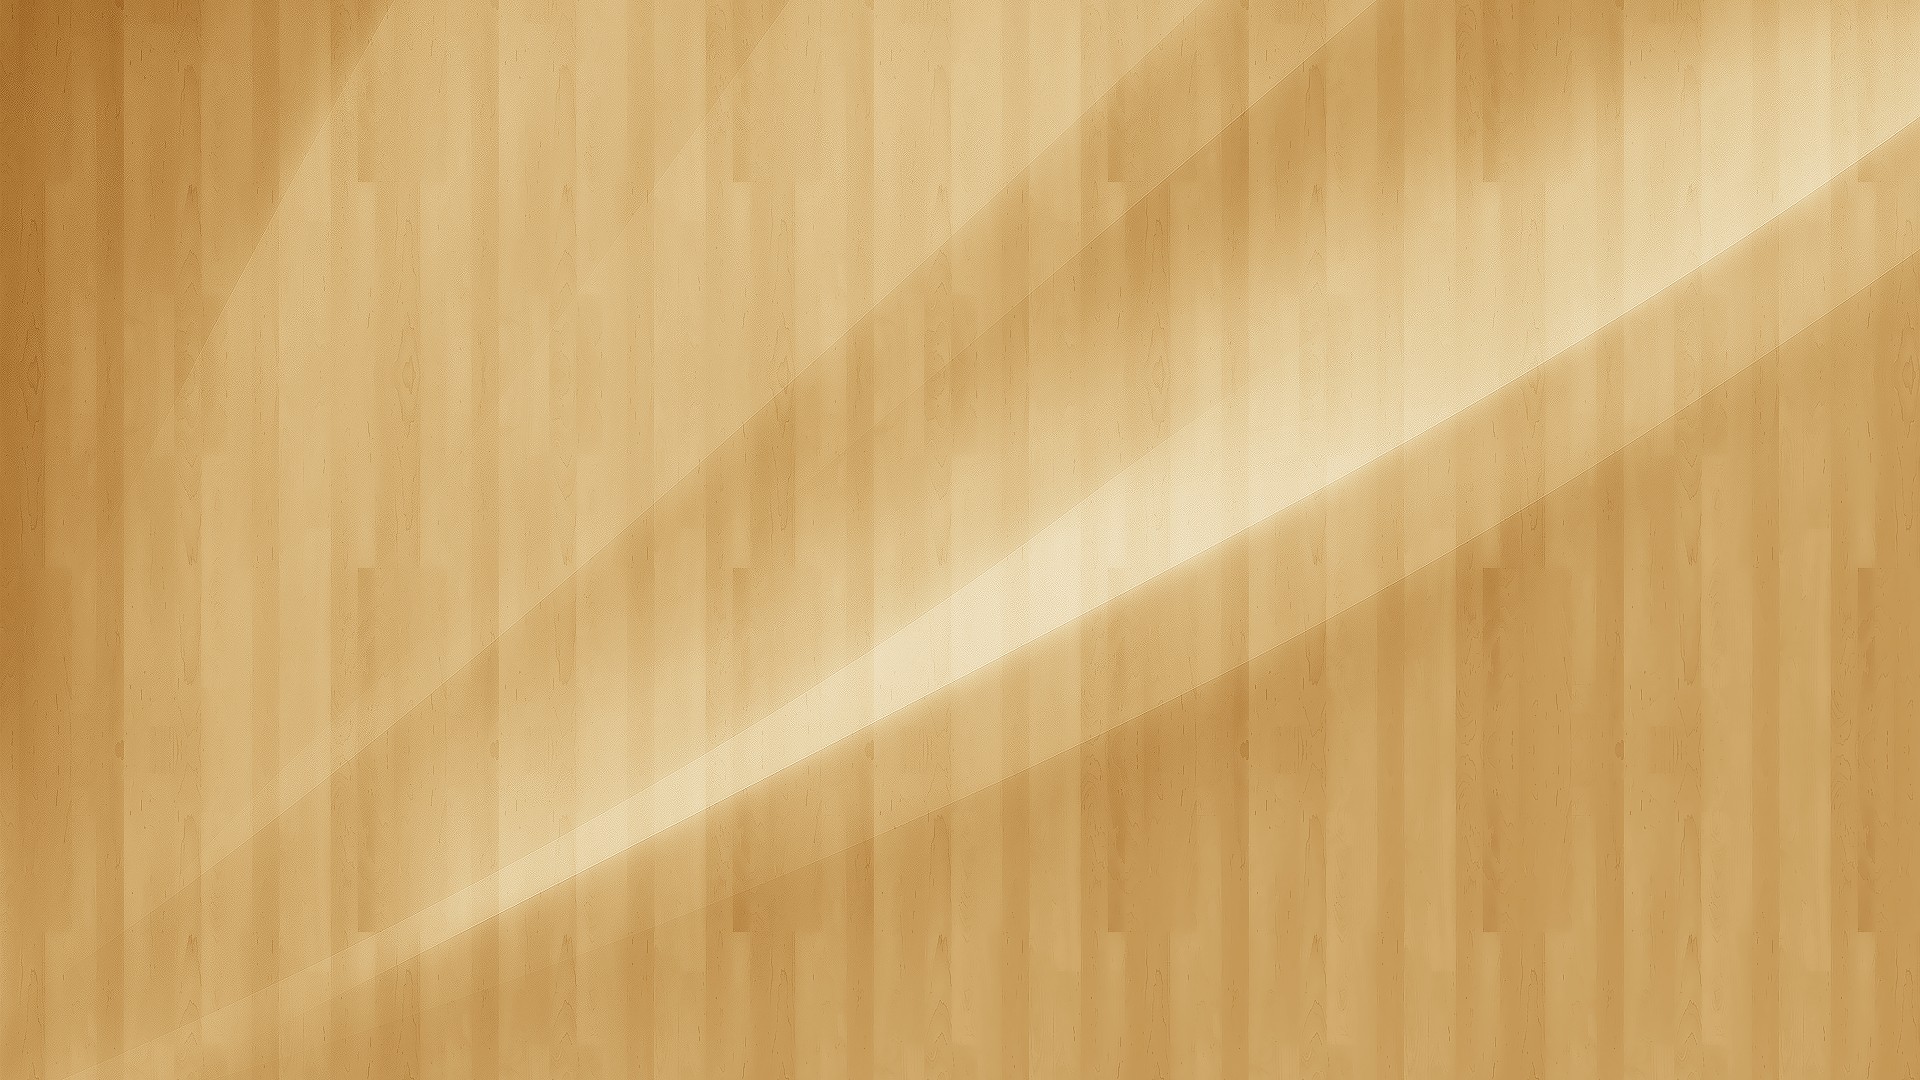 General 1920x1080 wood texture minimalism